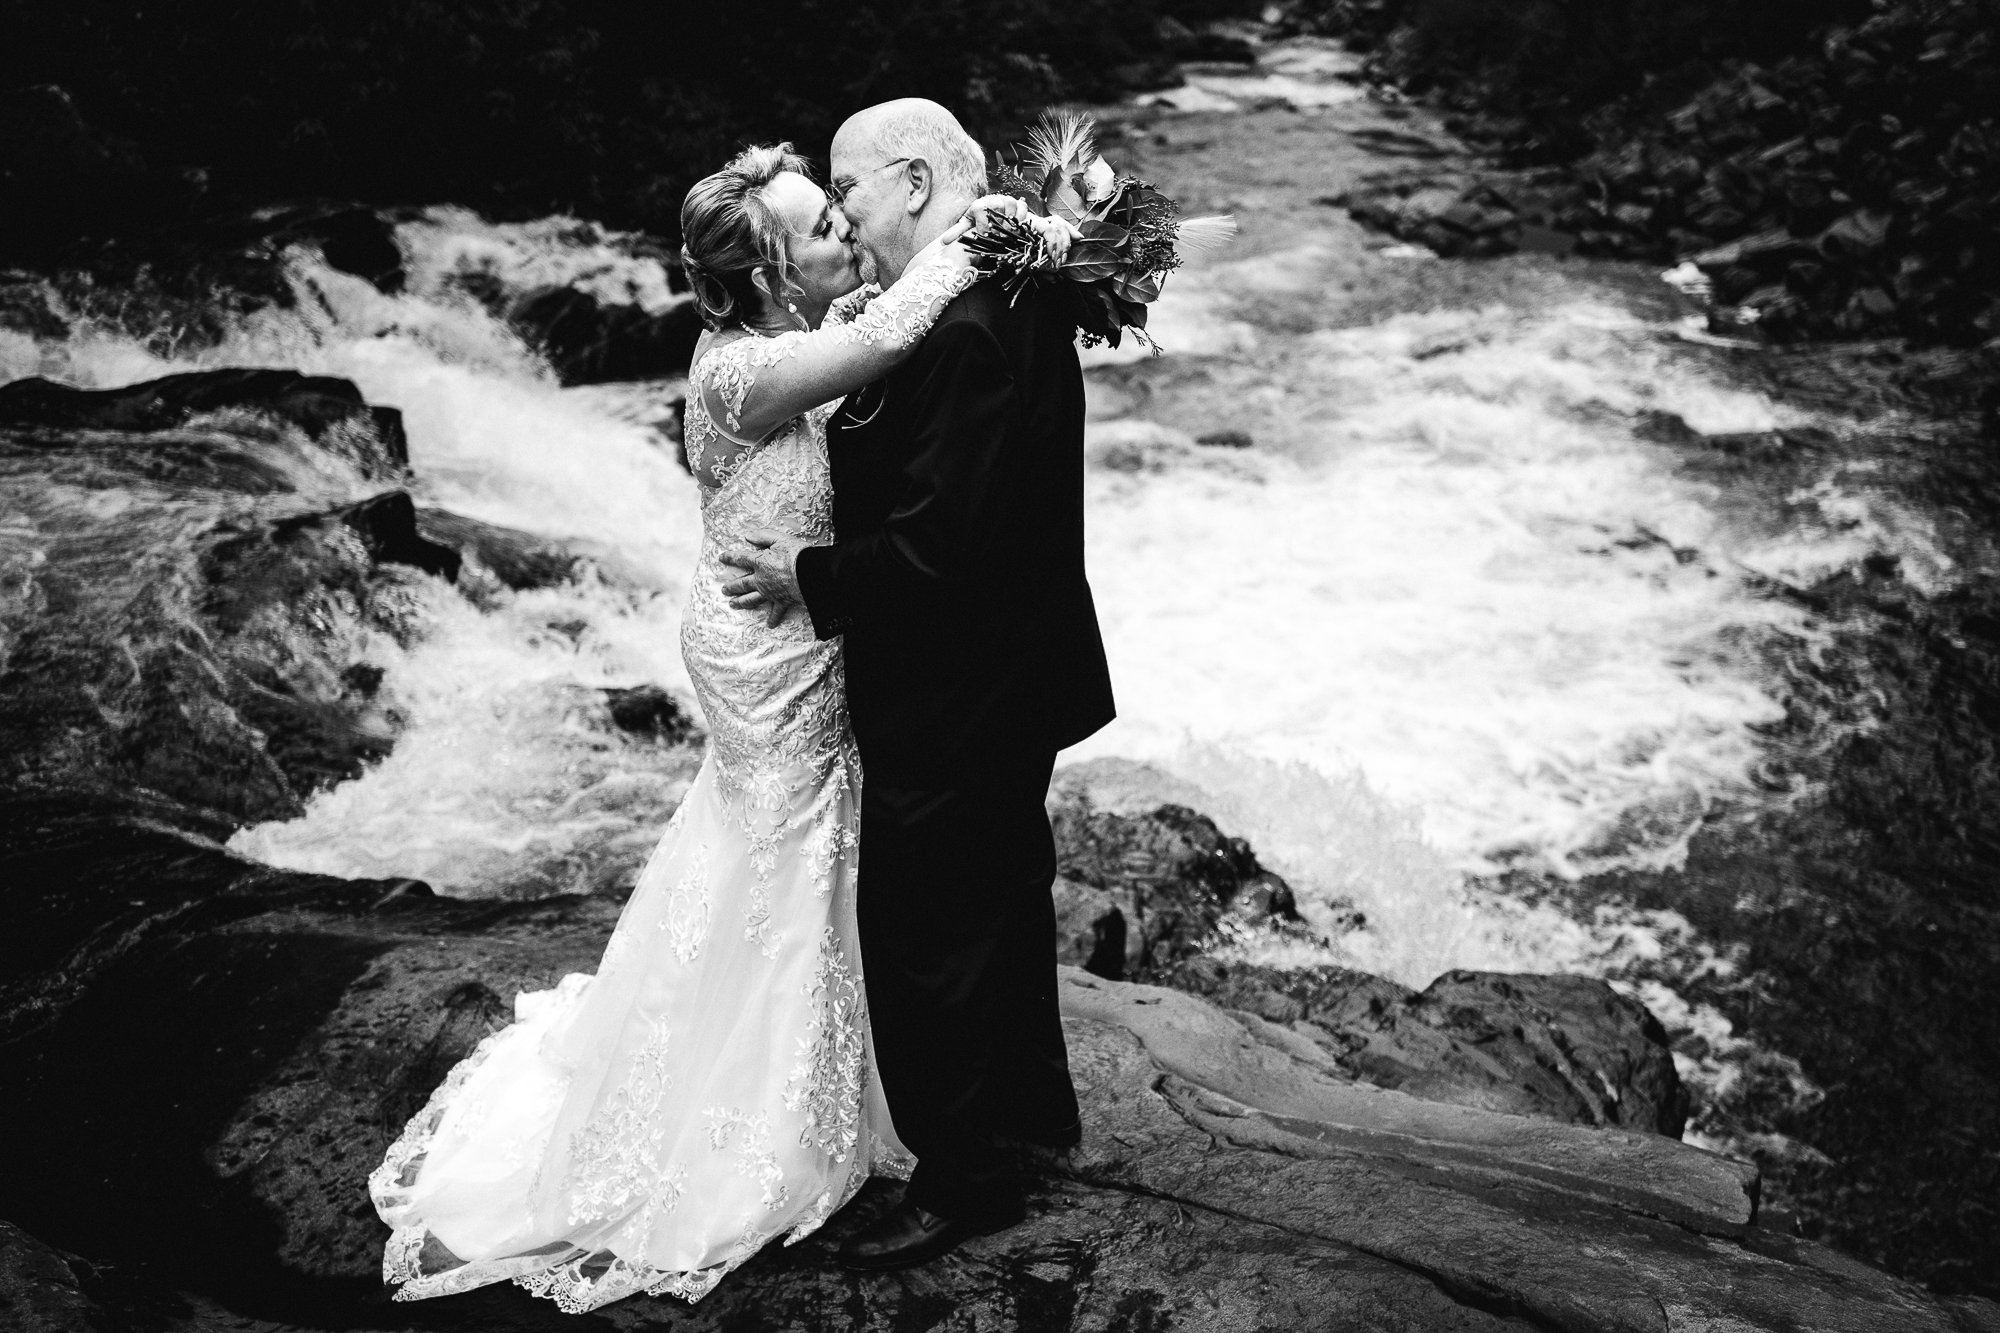 Documentary black and white waterfall wedding